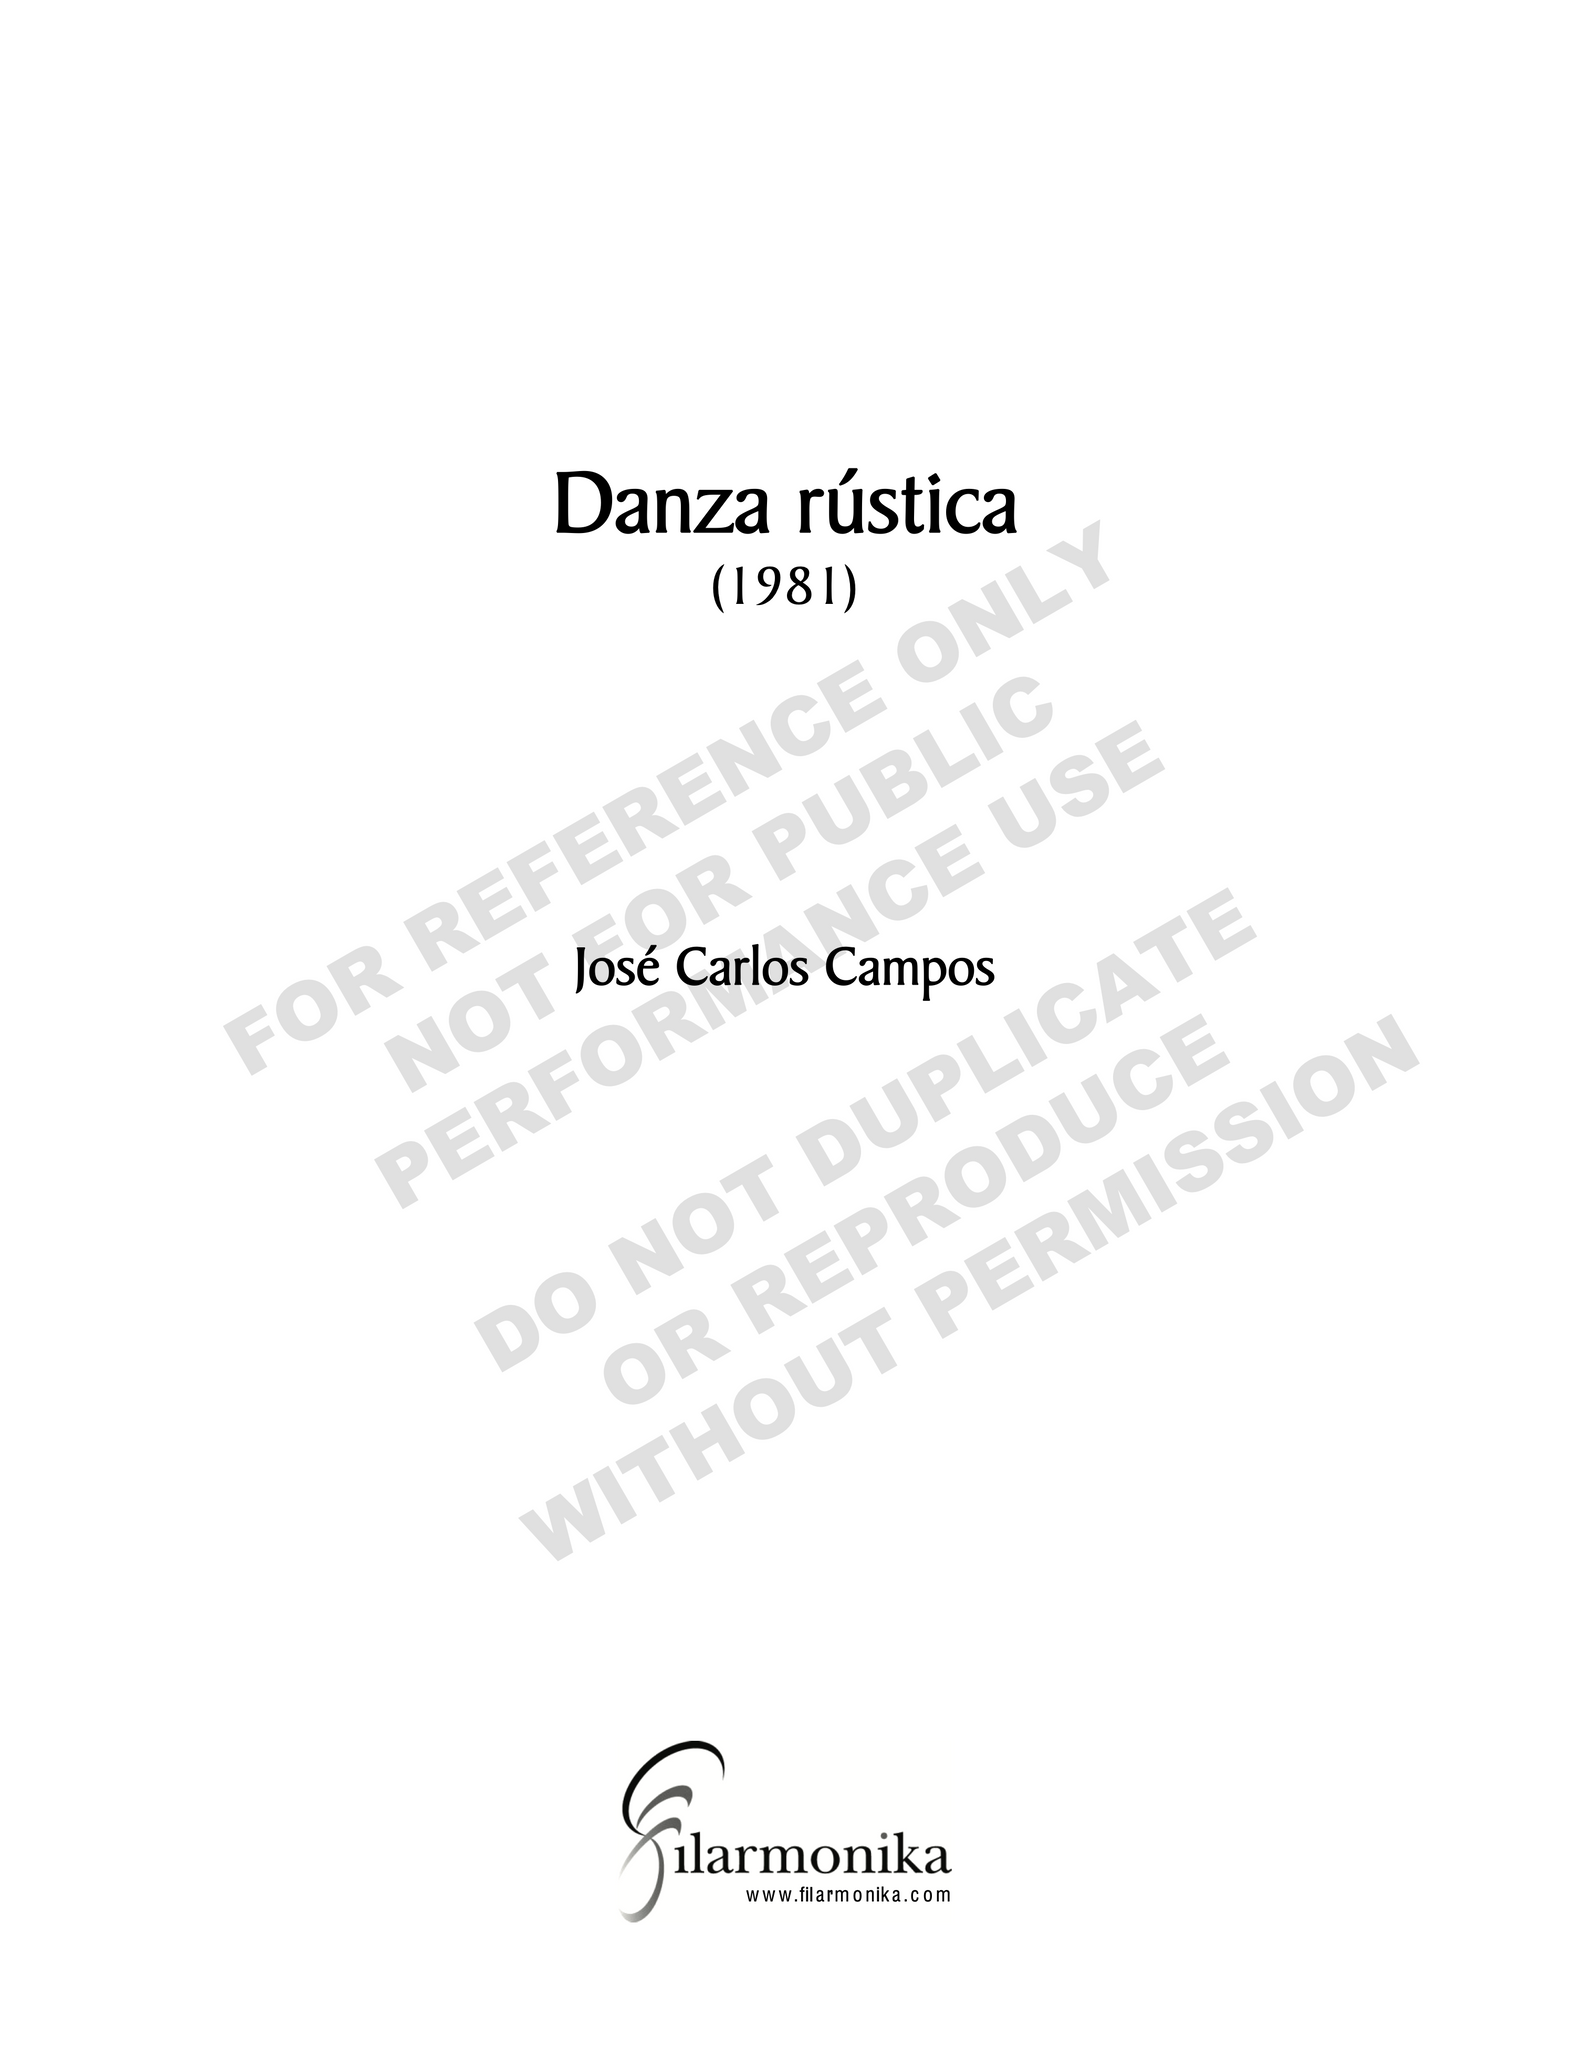 Danza rústica, for orchestra